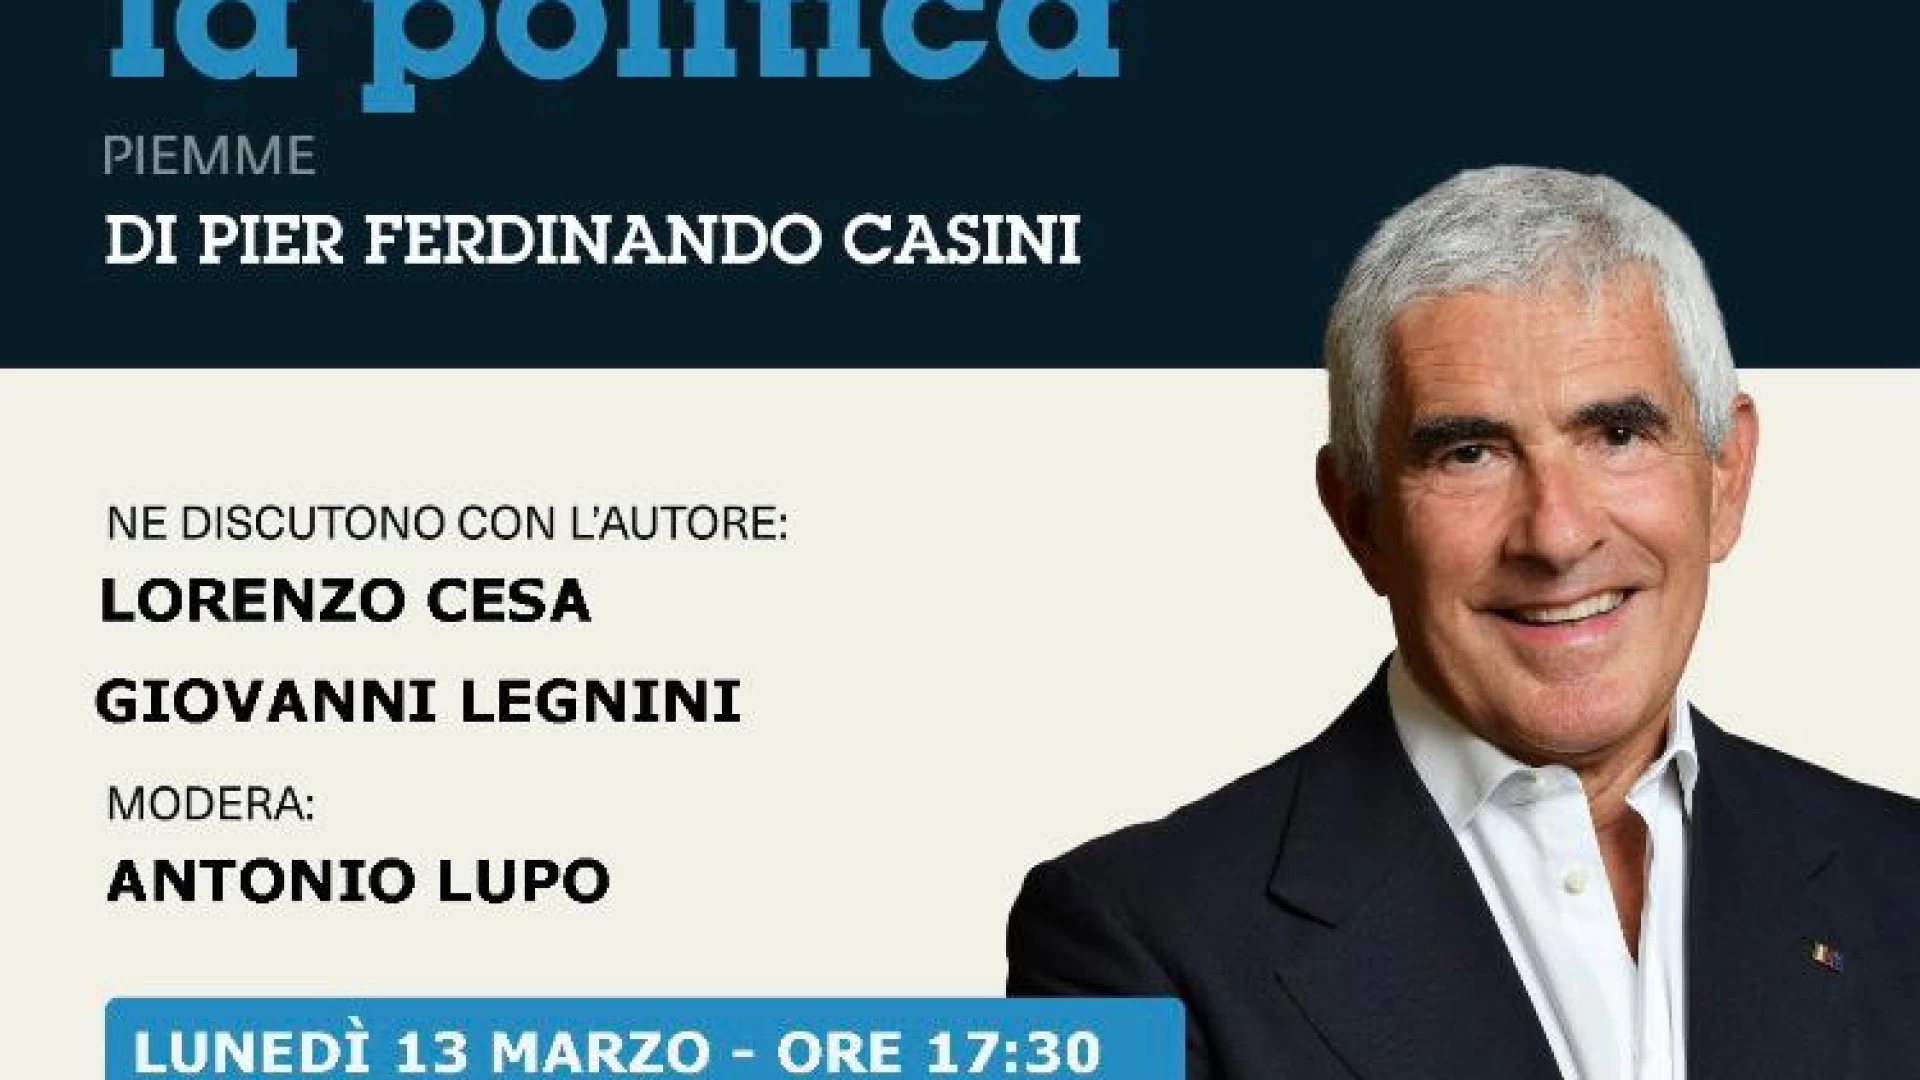 Isernia: lunedì 13 marzo la presentazione del libro di Pier Ferdinando Casini dal titolo “C’era una volta la politica”.